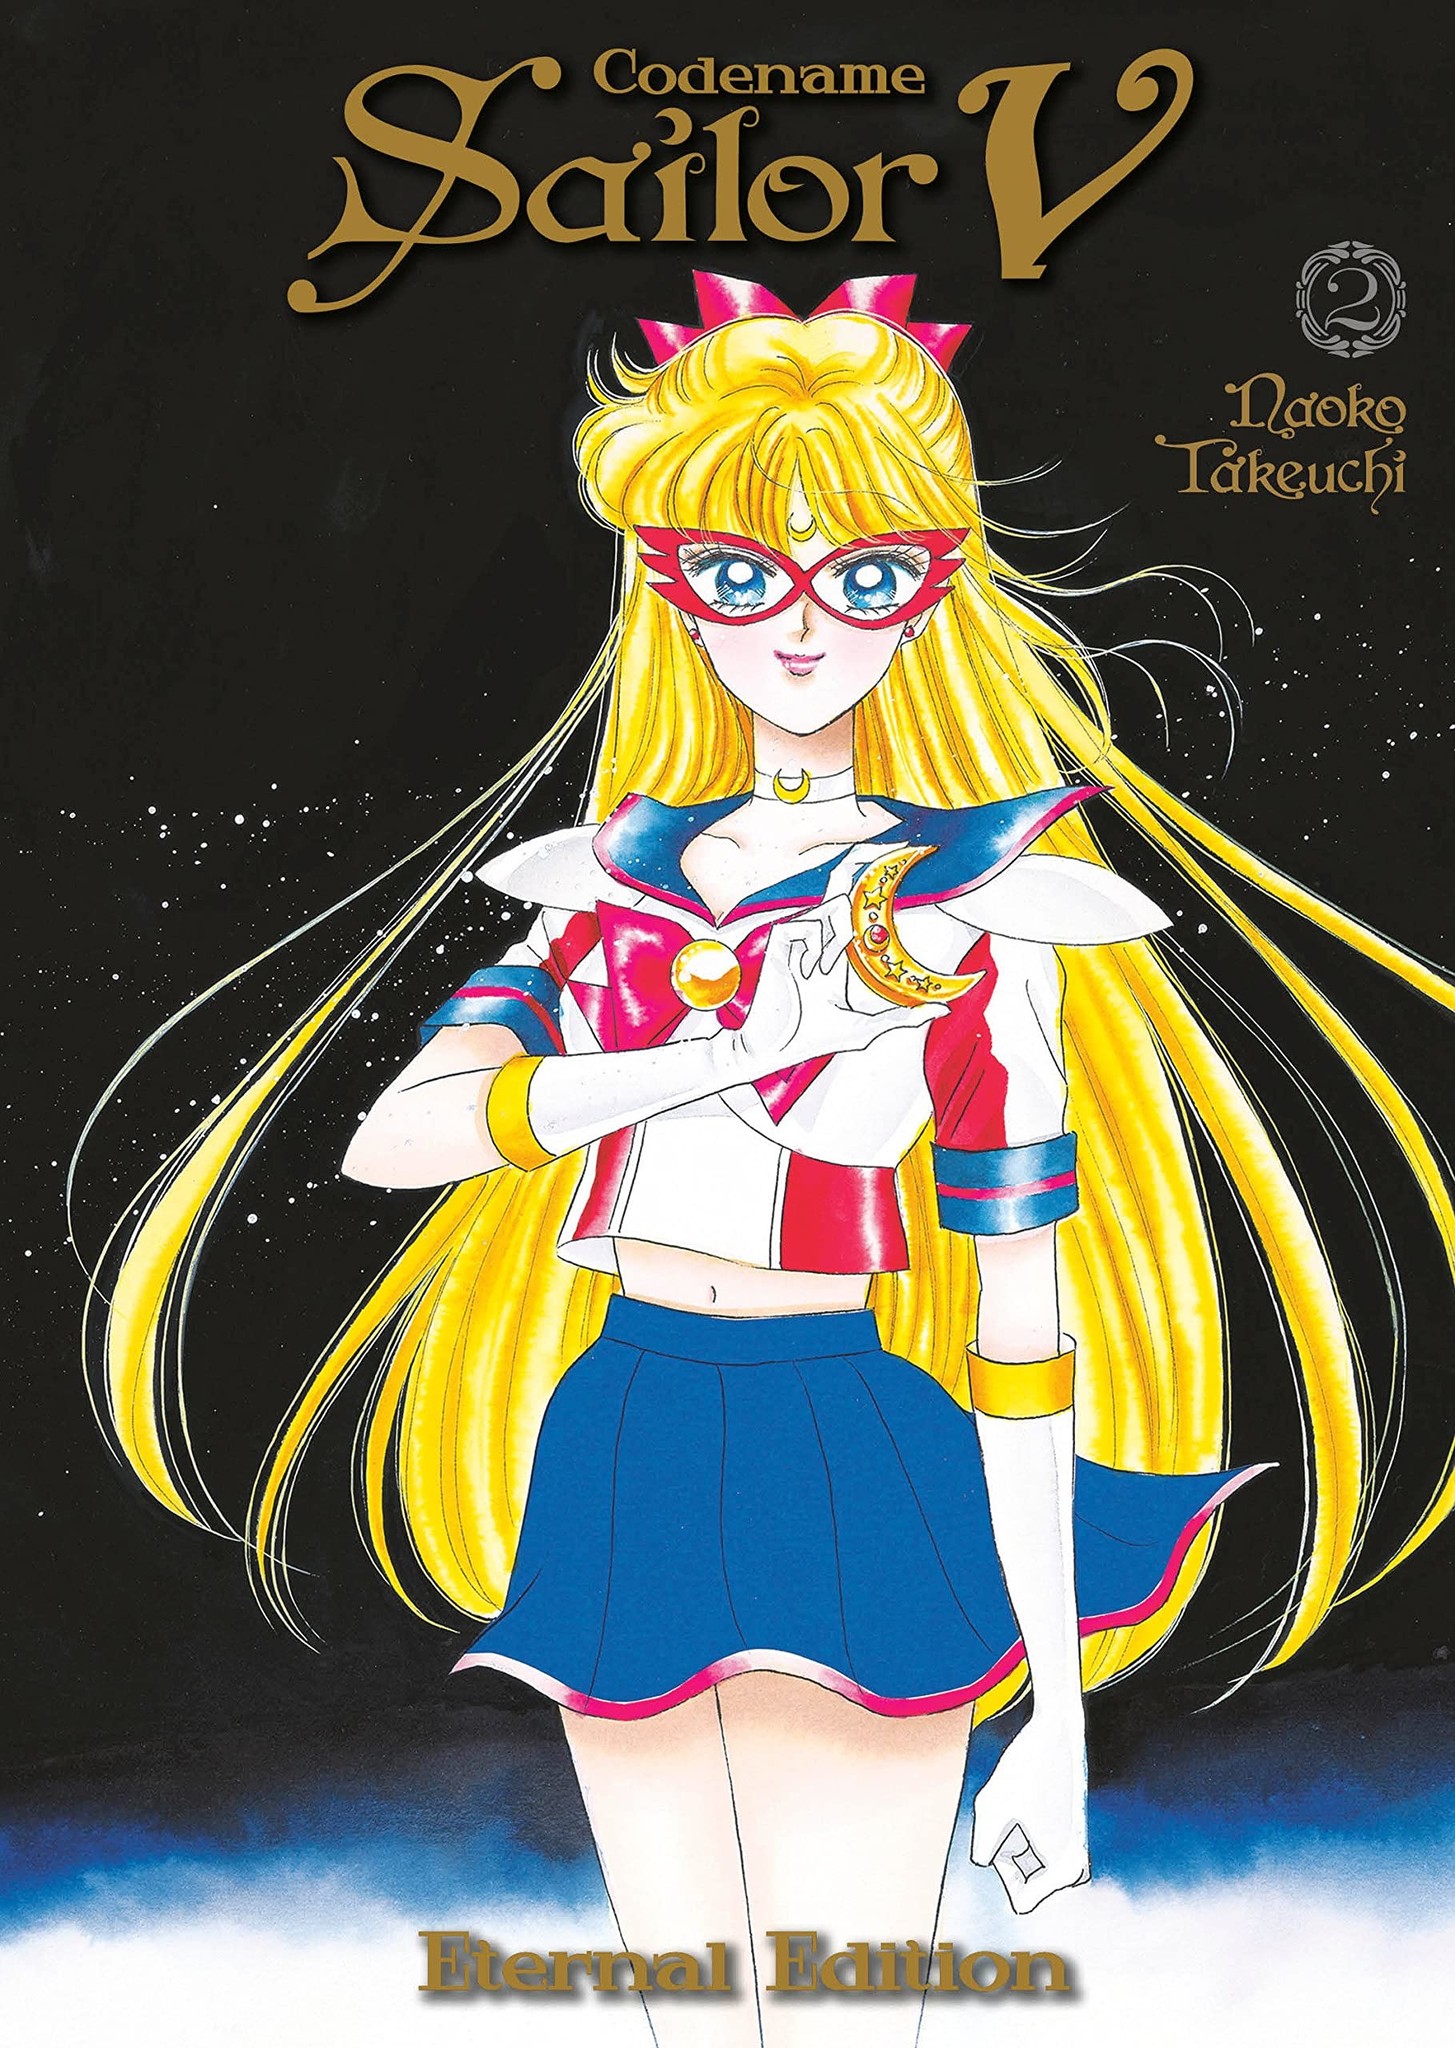 KODANSHA COMICS Codename Sailor V - Eternal Edition Vol 2